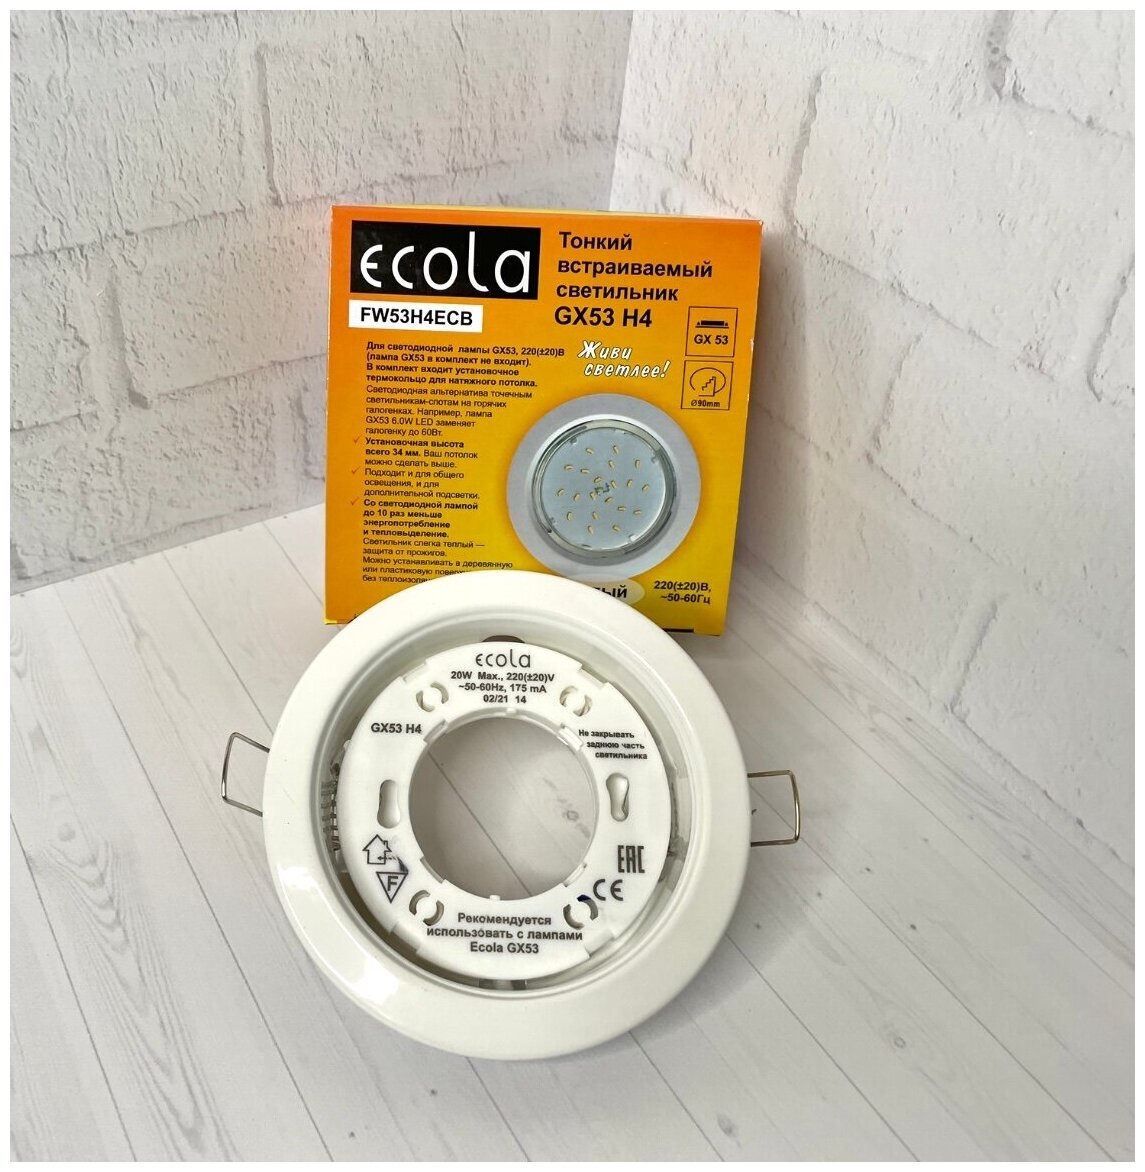 Ecola GX53 H4 светильник встраиваемый, потолочный - для натяжного потолка (Черненая бронза 38x106) - фотография № 4